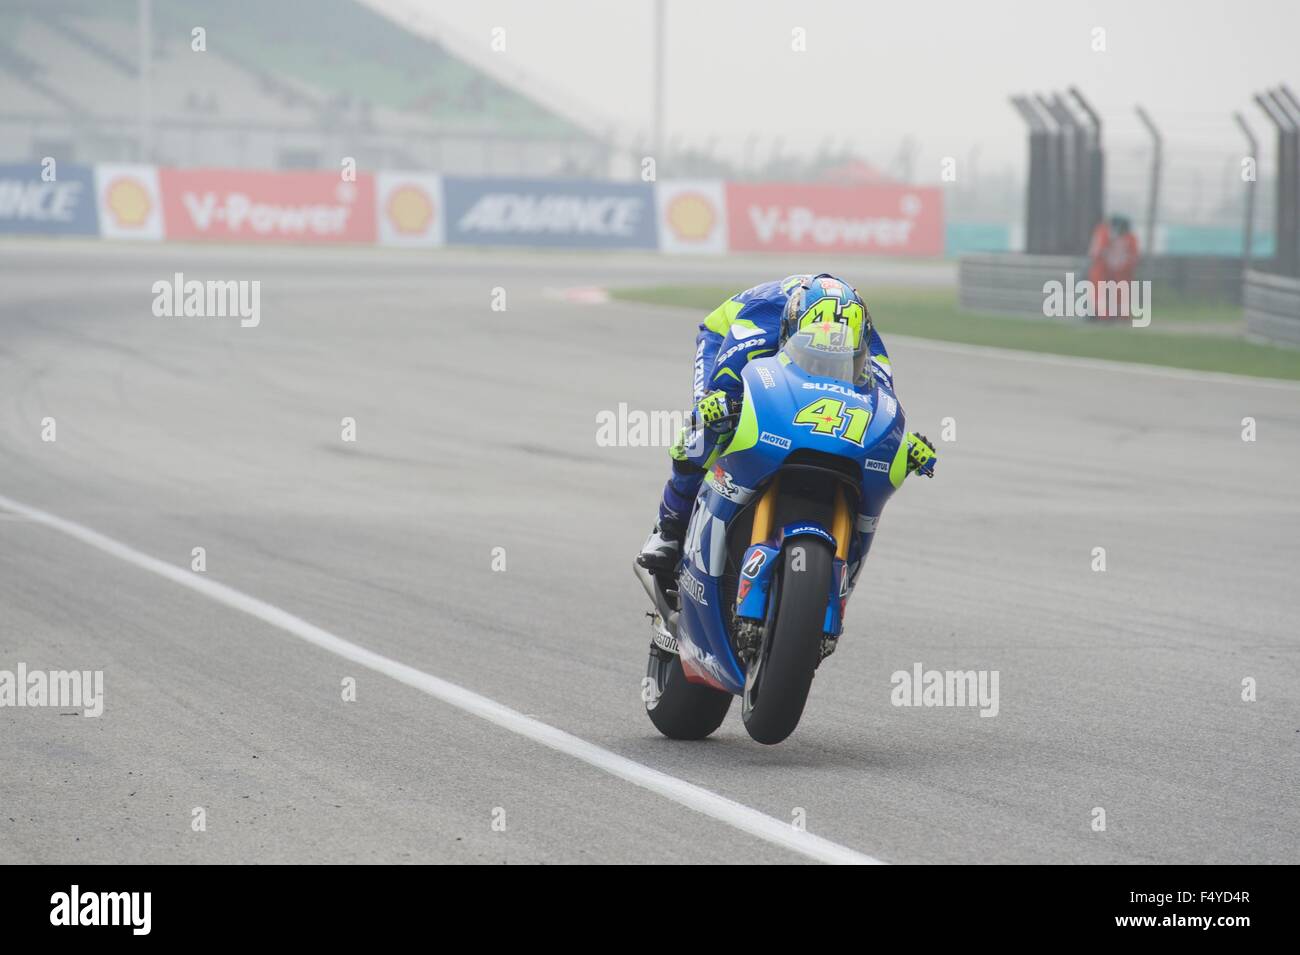 Le circuit de Sepang, en Malaisie. 24 Oct, 2015. Aleix Espargaro tire un wheelie sur sa Suzuki Moto GP lors des qualifications pour le Grand Prix moto de Malaisie Shell à Sepang Circuit. Banque D'Images